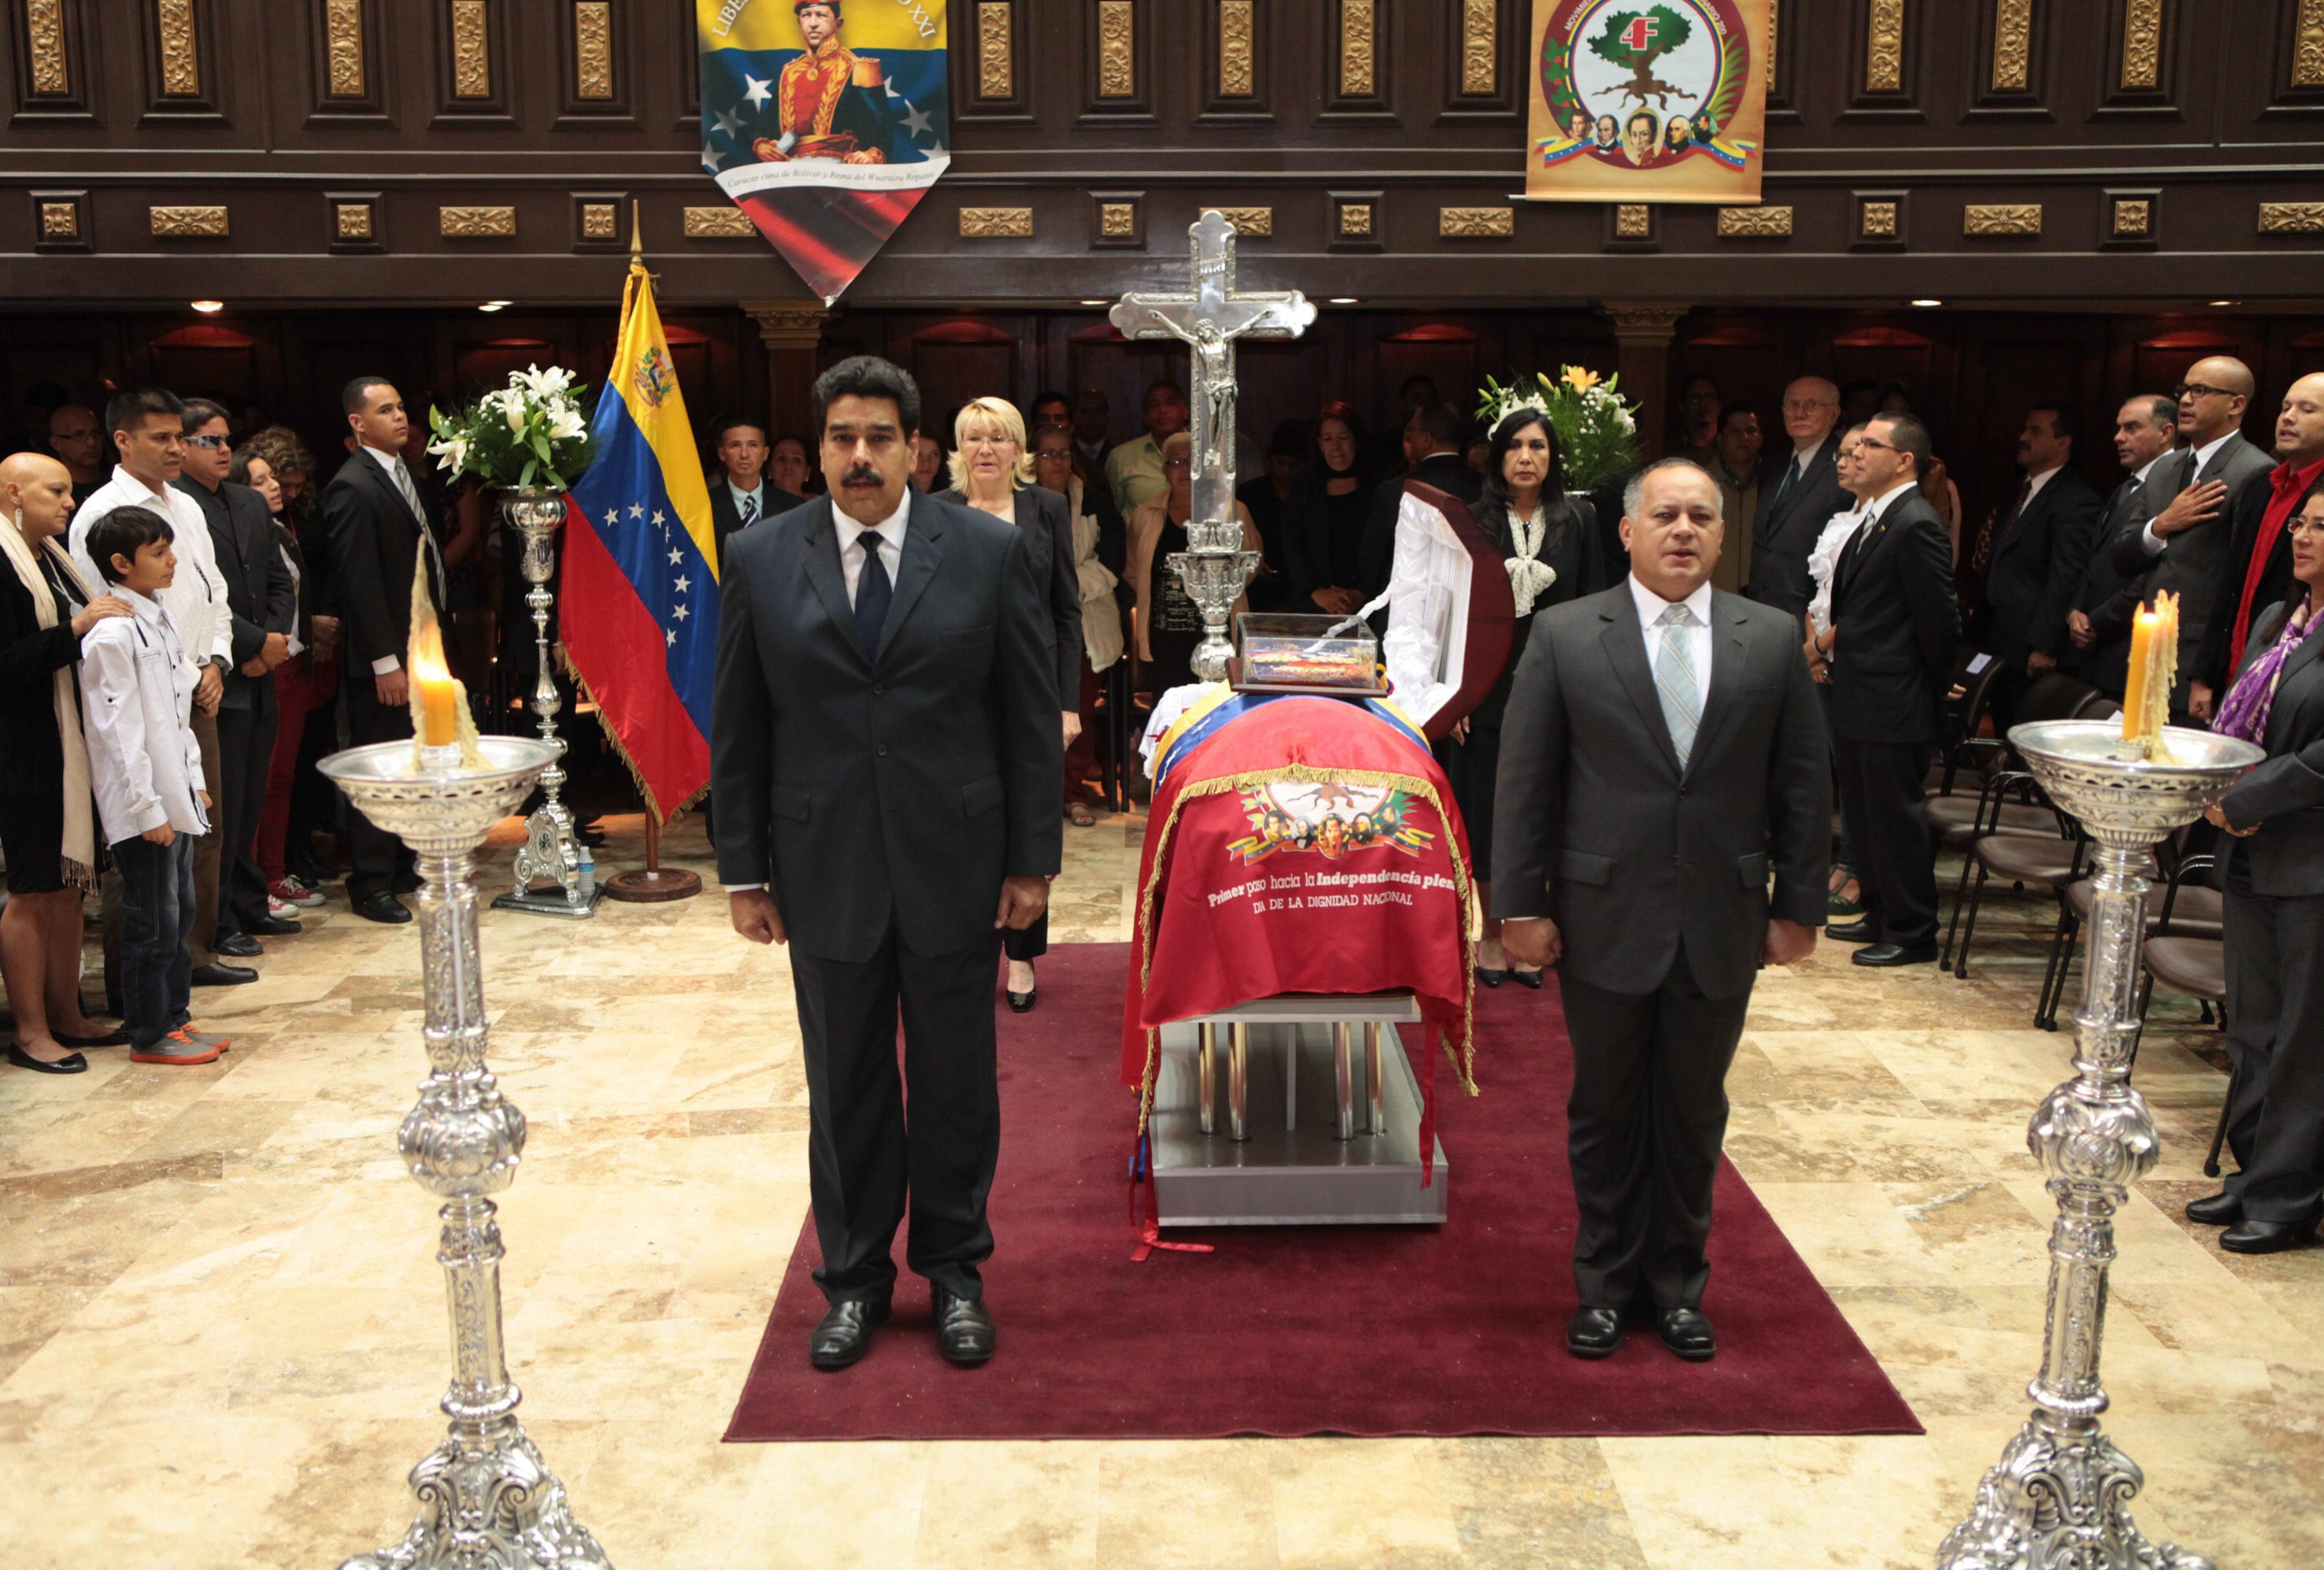 Βενεζουέλα: Νεκρός βρέθηκε στενός συνεργάτης του Ούγκο Τσάβες